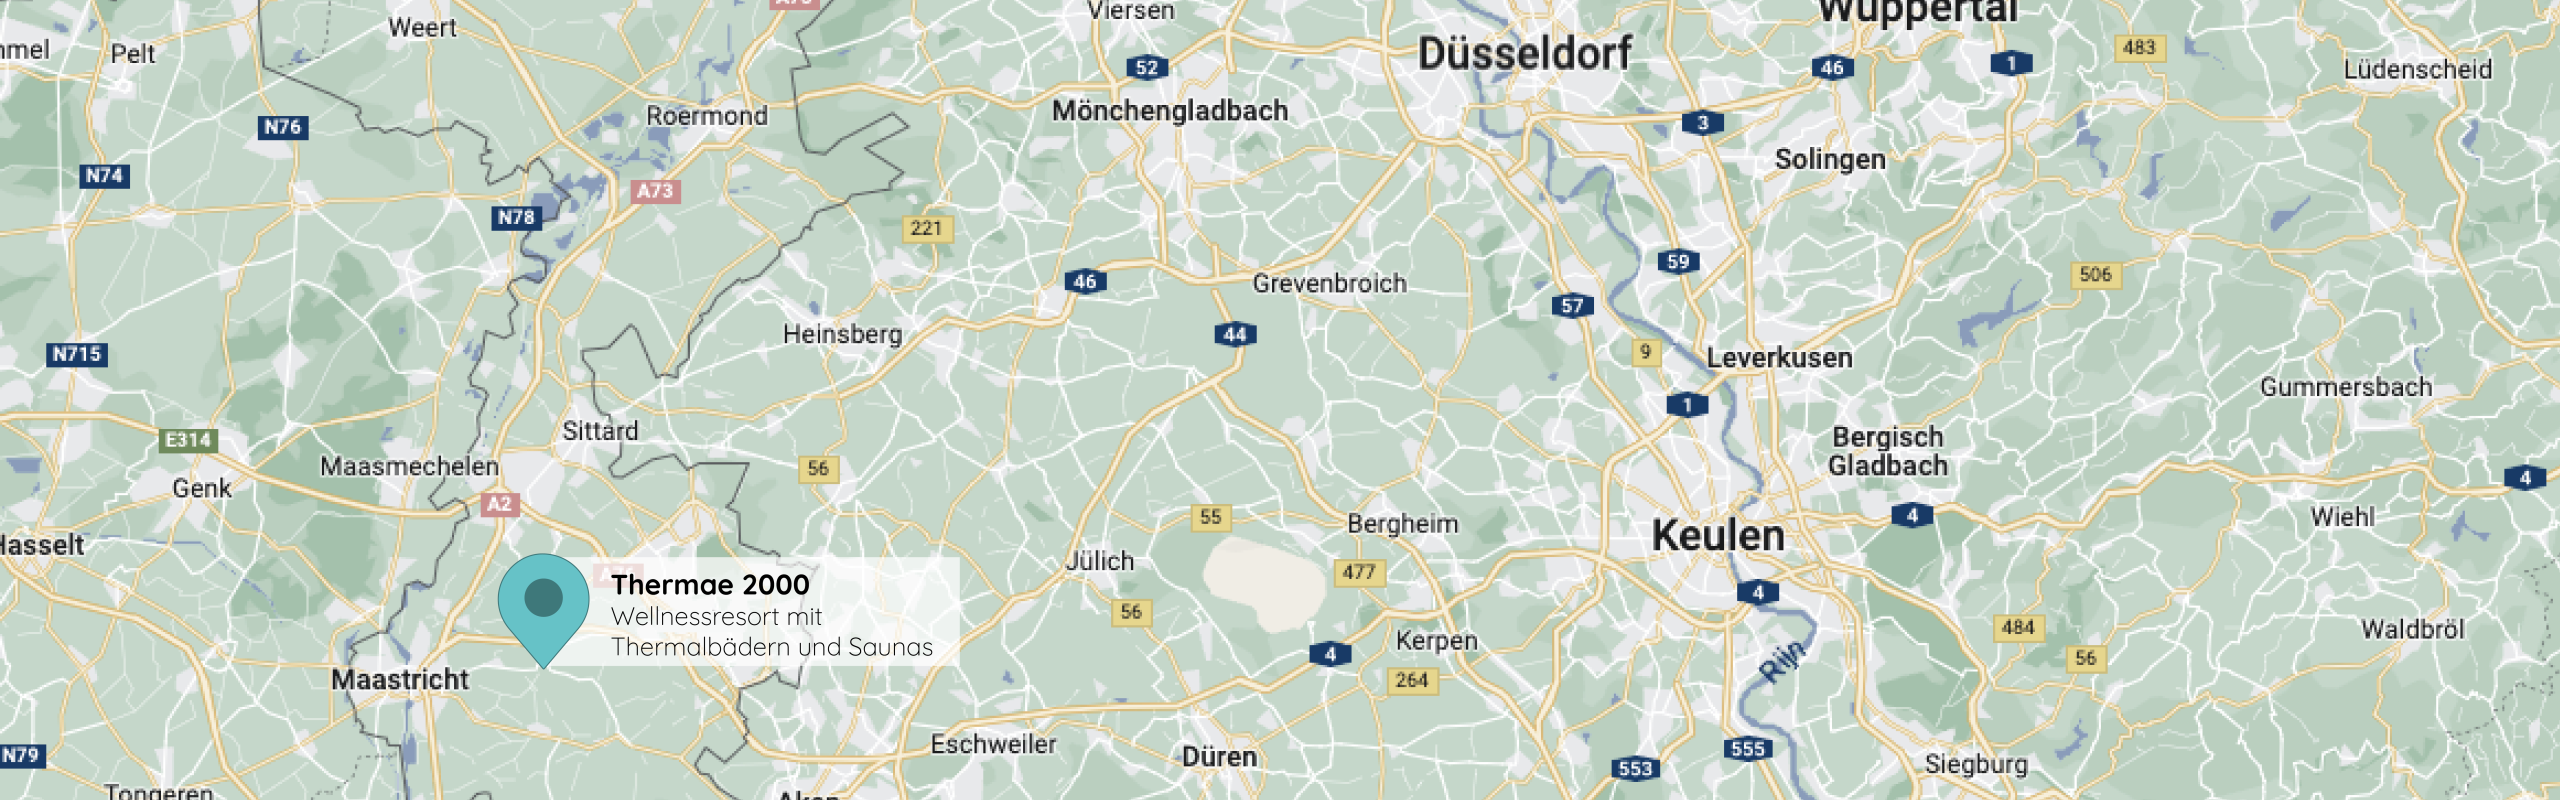 Thermae 2000 op de kaart voor de Duitse website.